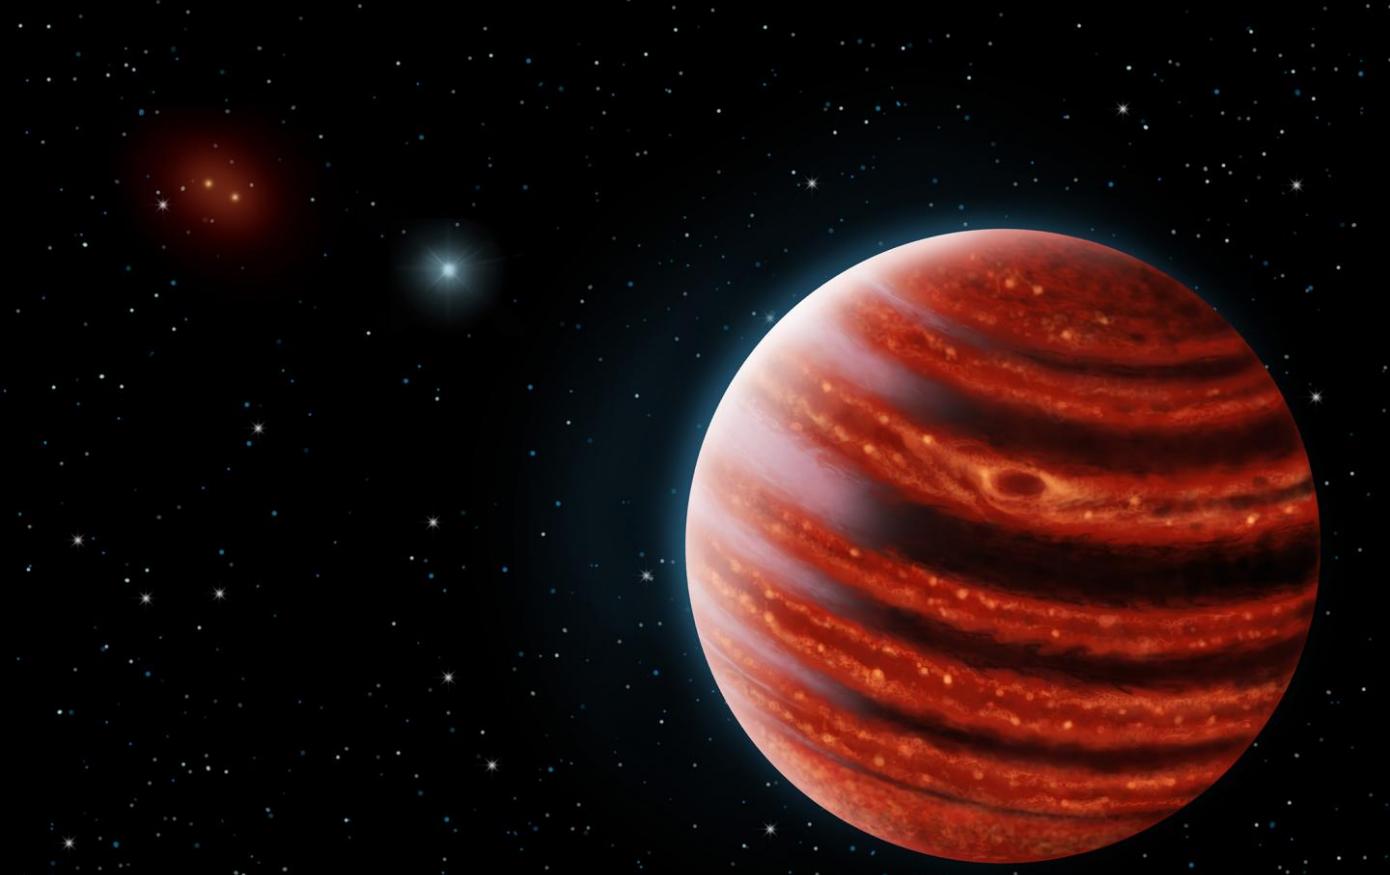 双子座行星成像仪（GPI）发现它的第一个太阳系外行星